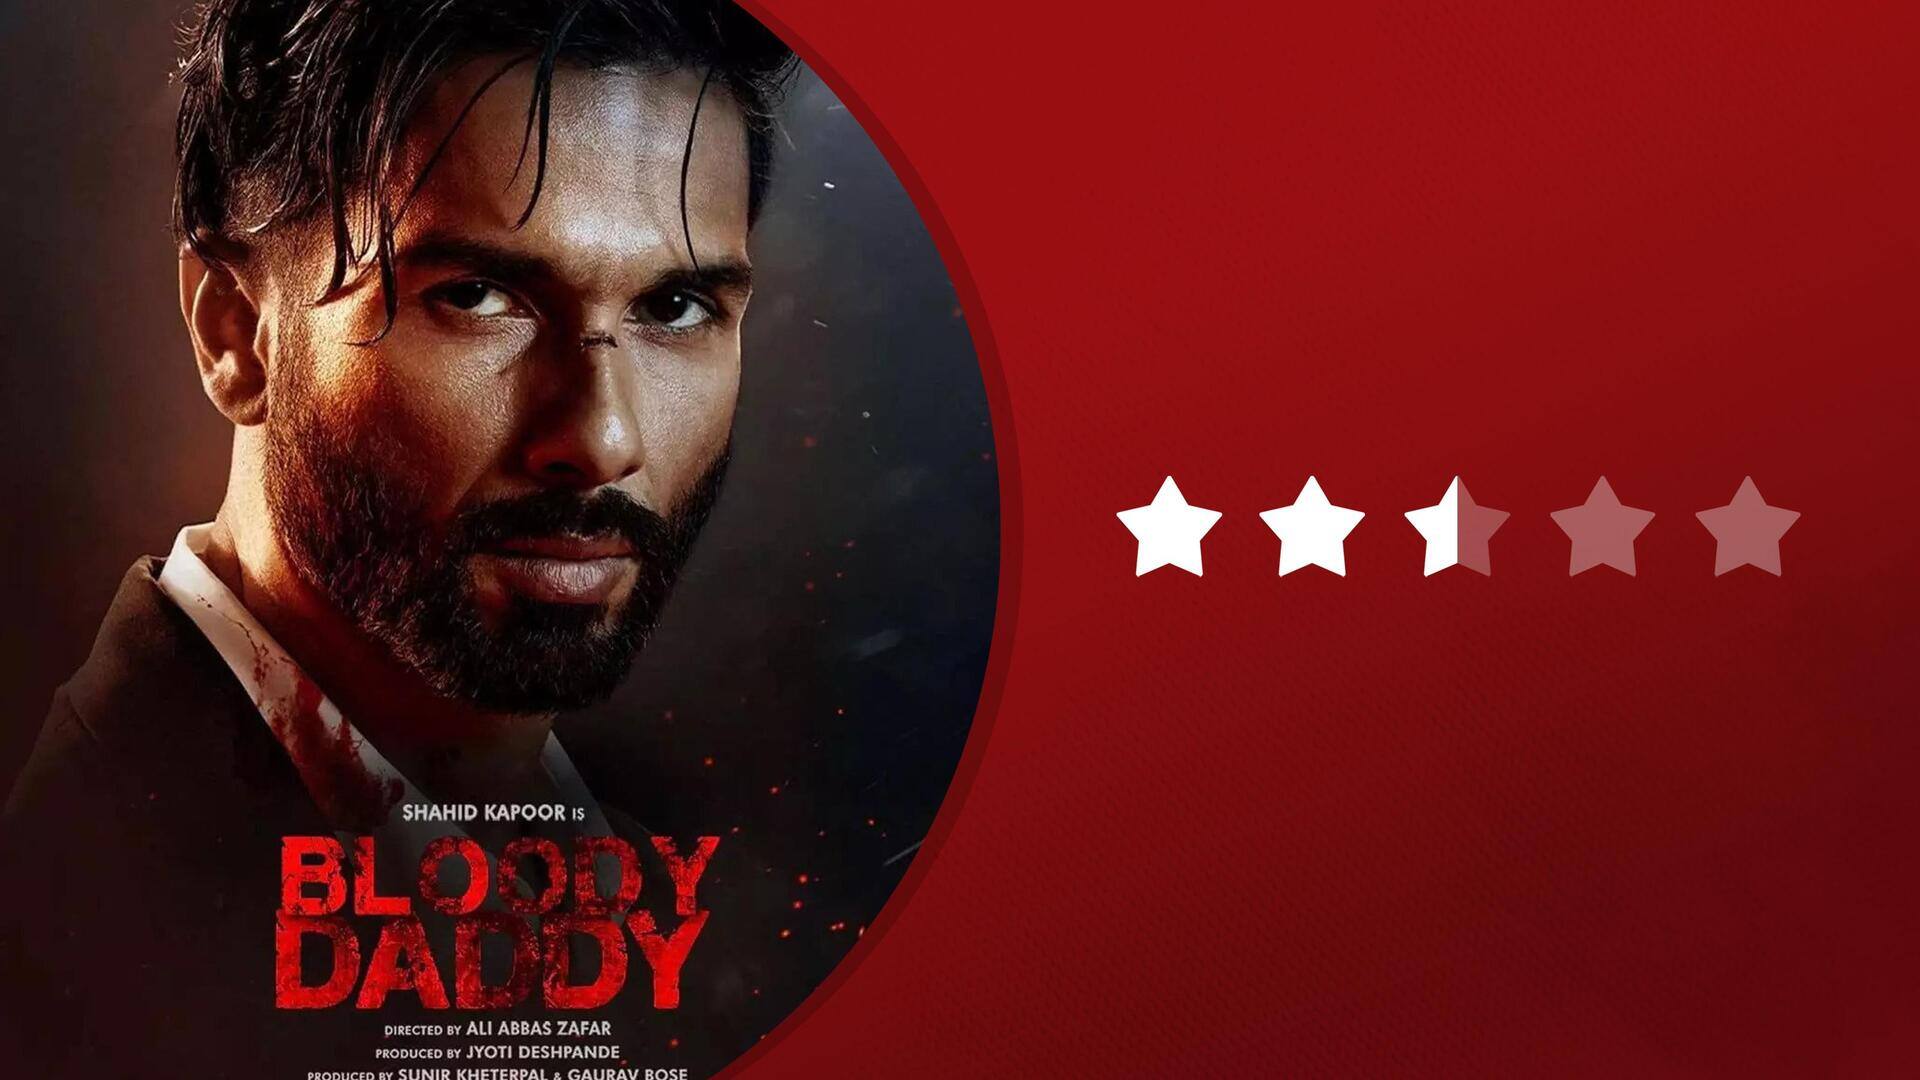 'ब्लडी डैडी' रिव्यू: एक्शन पर जोर और शाहिद का अभिनय बेजोड़, लेकिन कहानी कमजोर